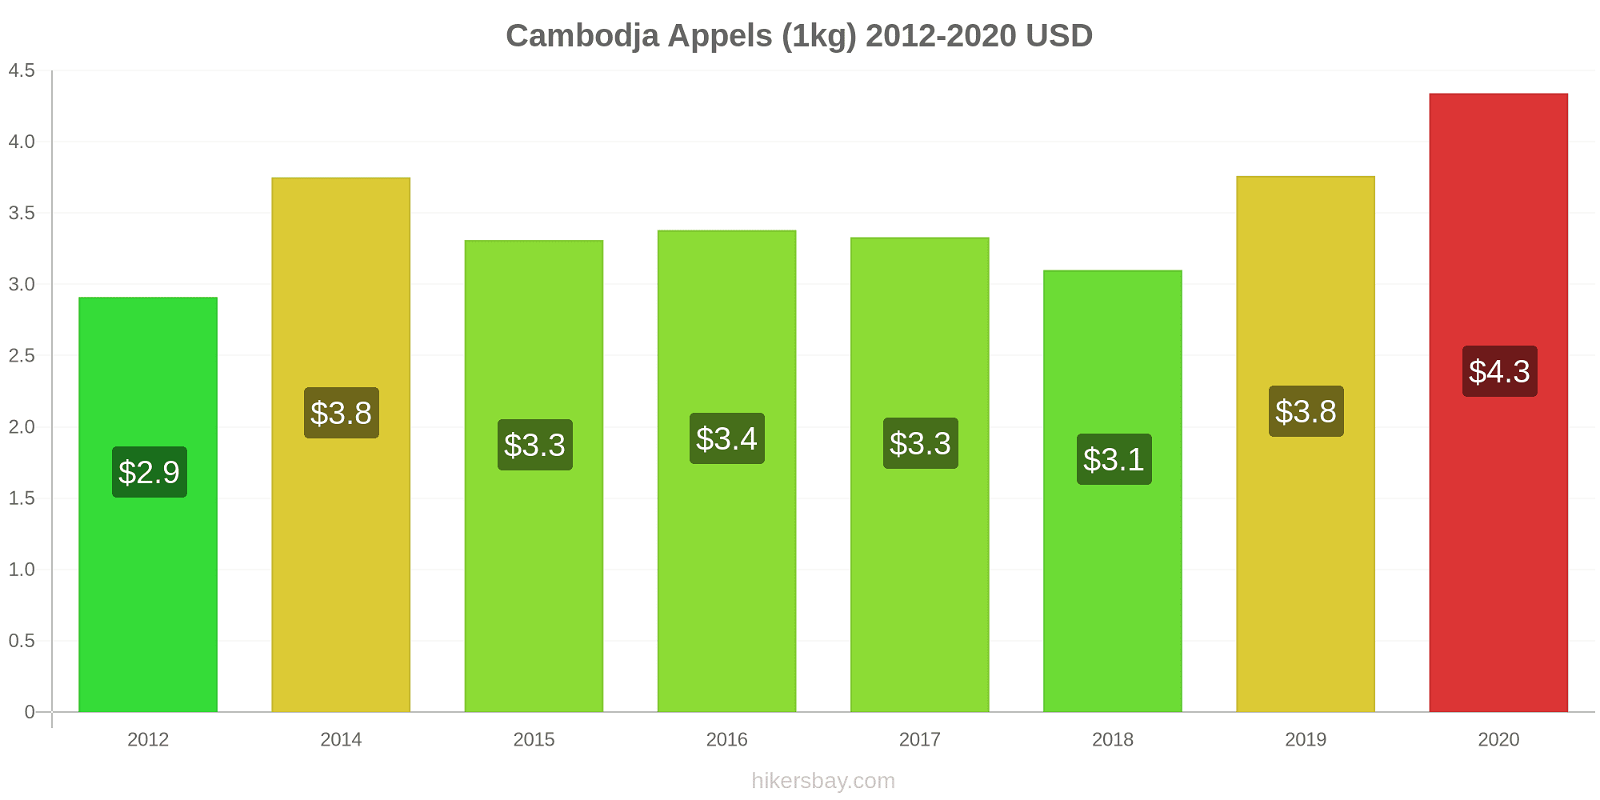 Cambodja prijswijzigingen Appels (1kg) hikersbay.com